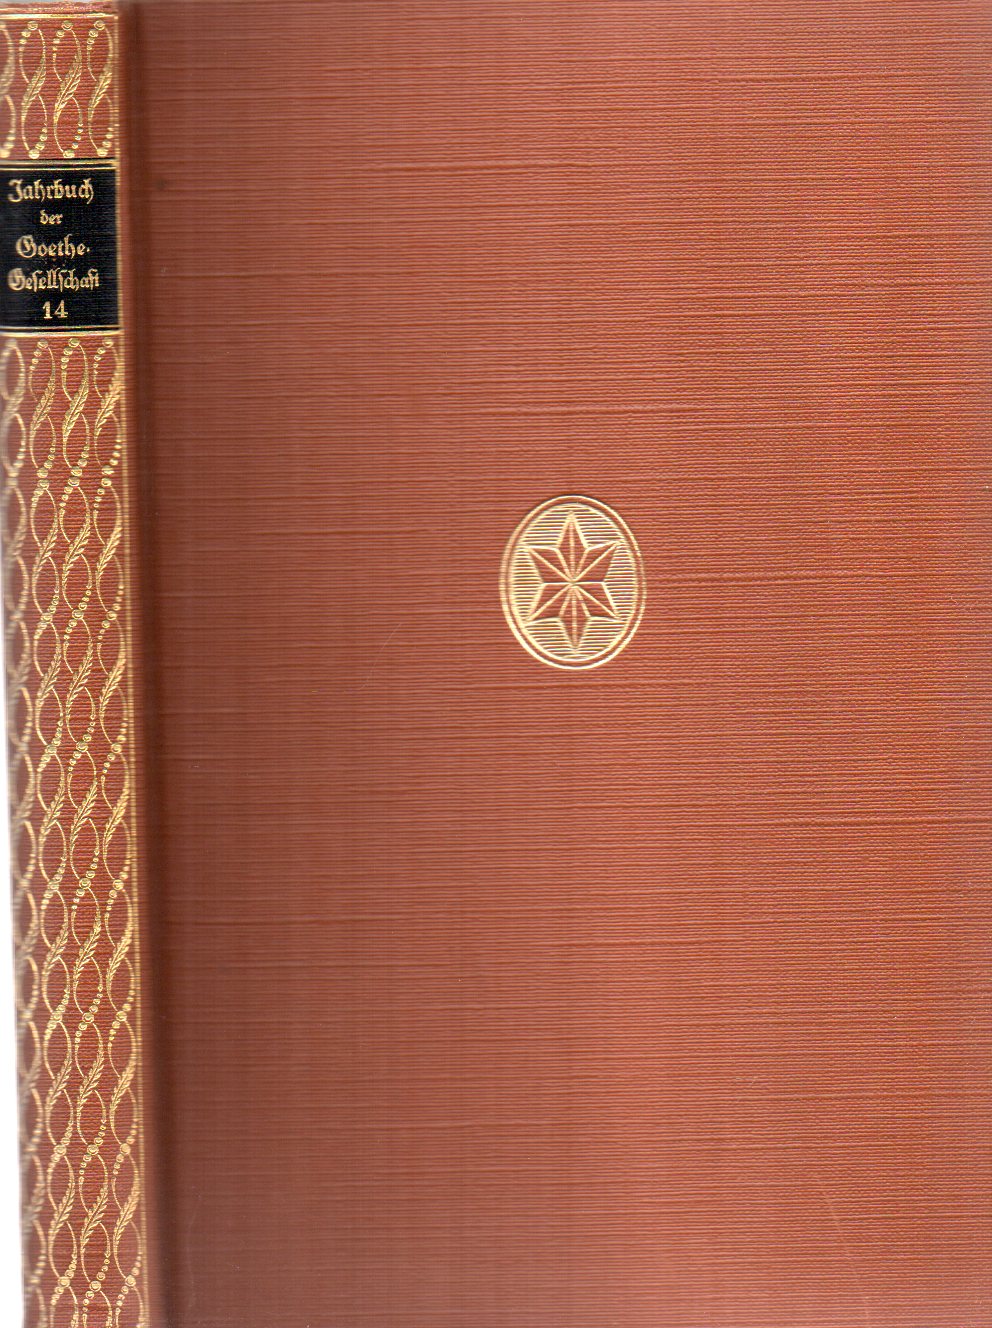 Goethe-Gesellschaft  Jahrbuch der Goethe-Gesellschaft Vierzehnter Band 